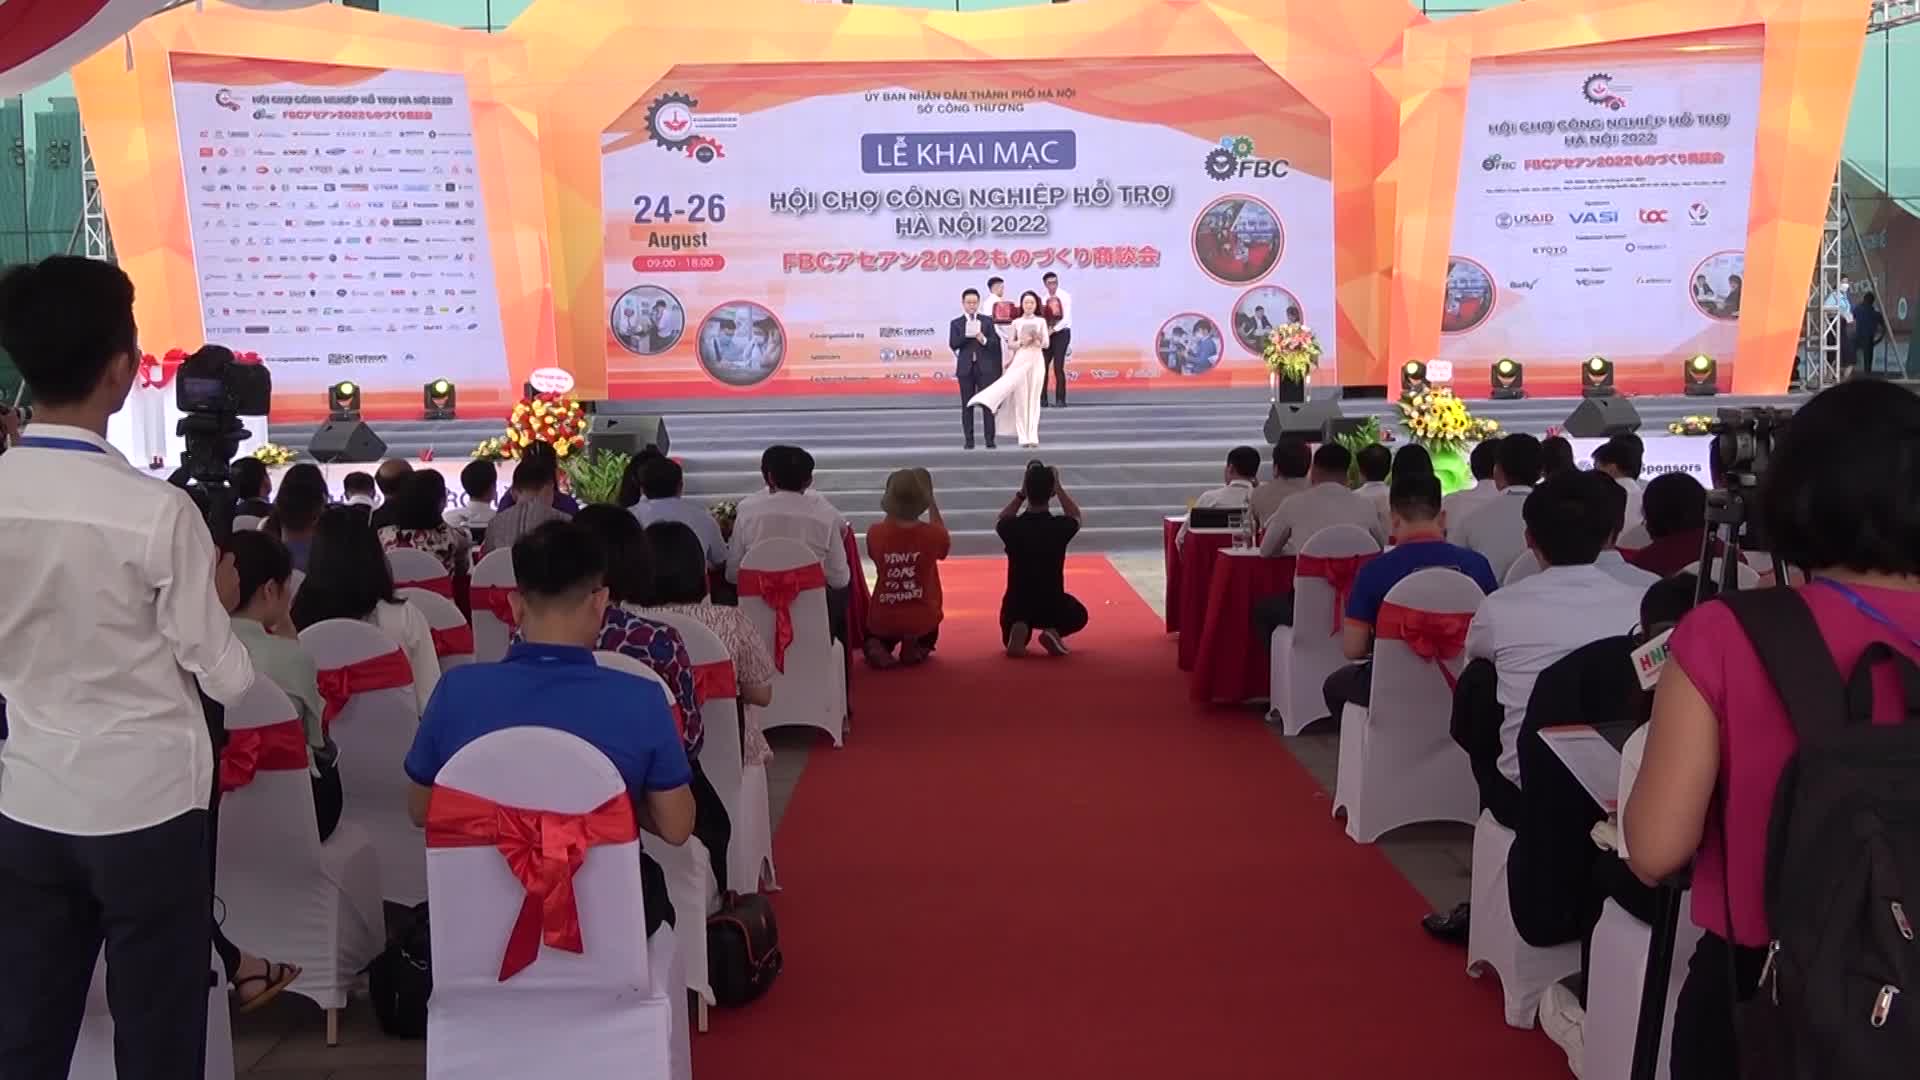 Tổng kết chương trình Công nghiệp hỗ trợ năm 2022 của thành phố Hà Nội